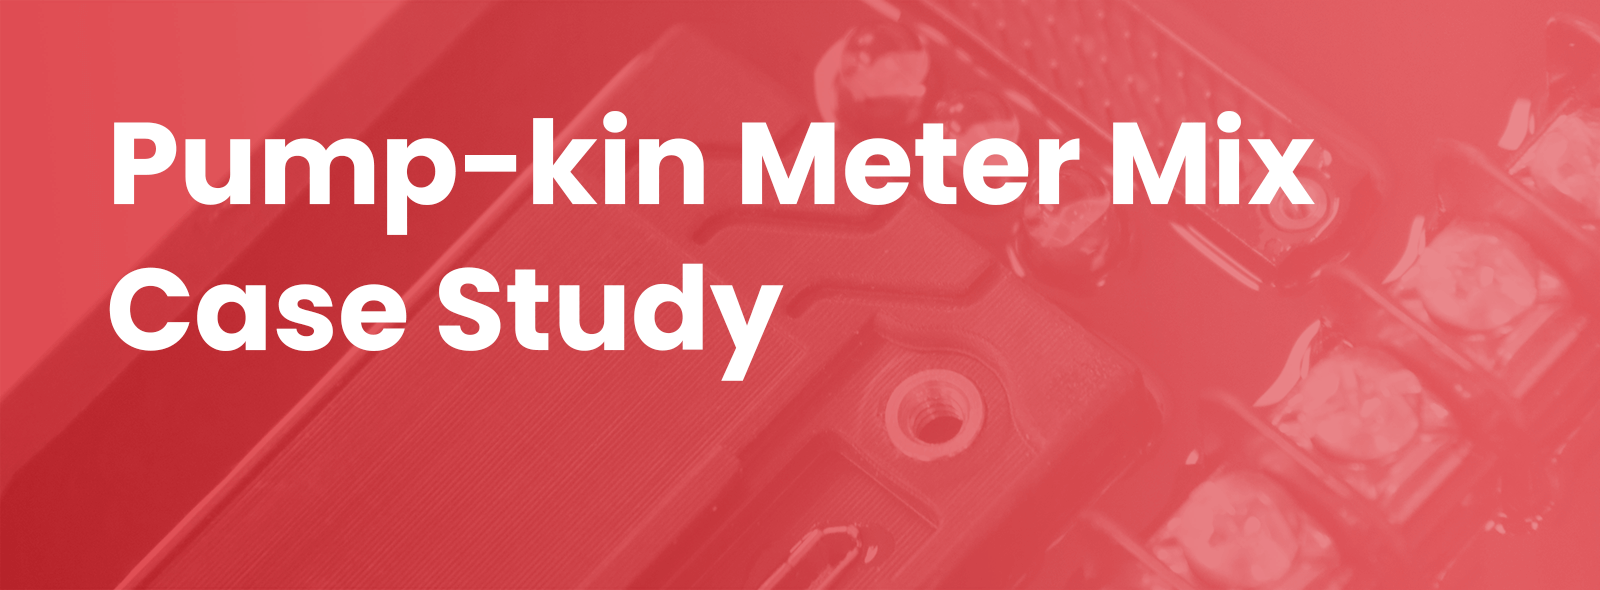 Pupmp-kin Meter Mix Case Study